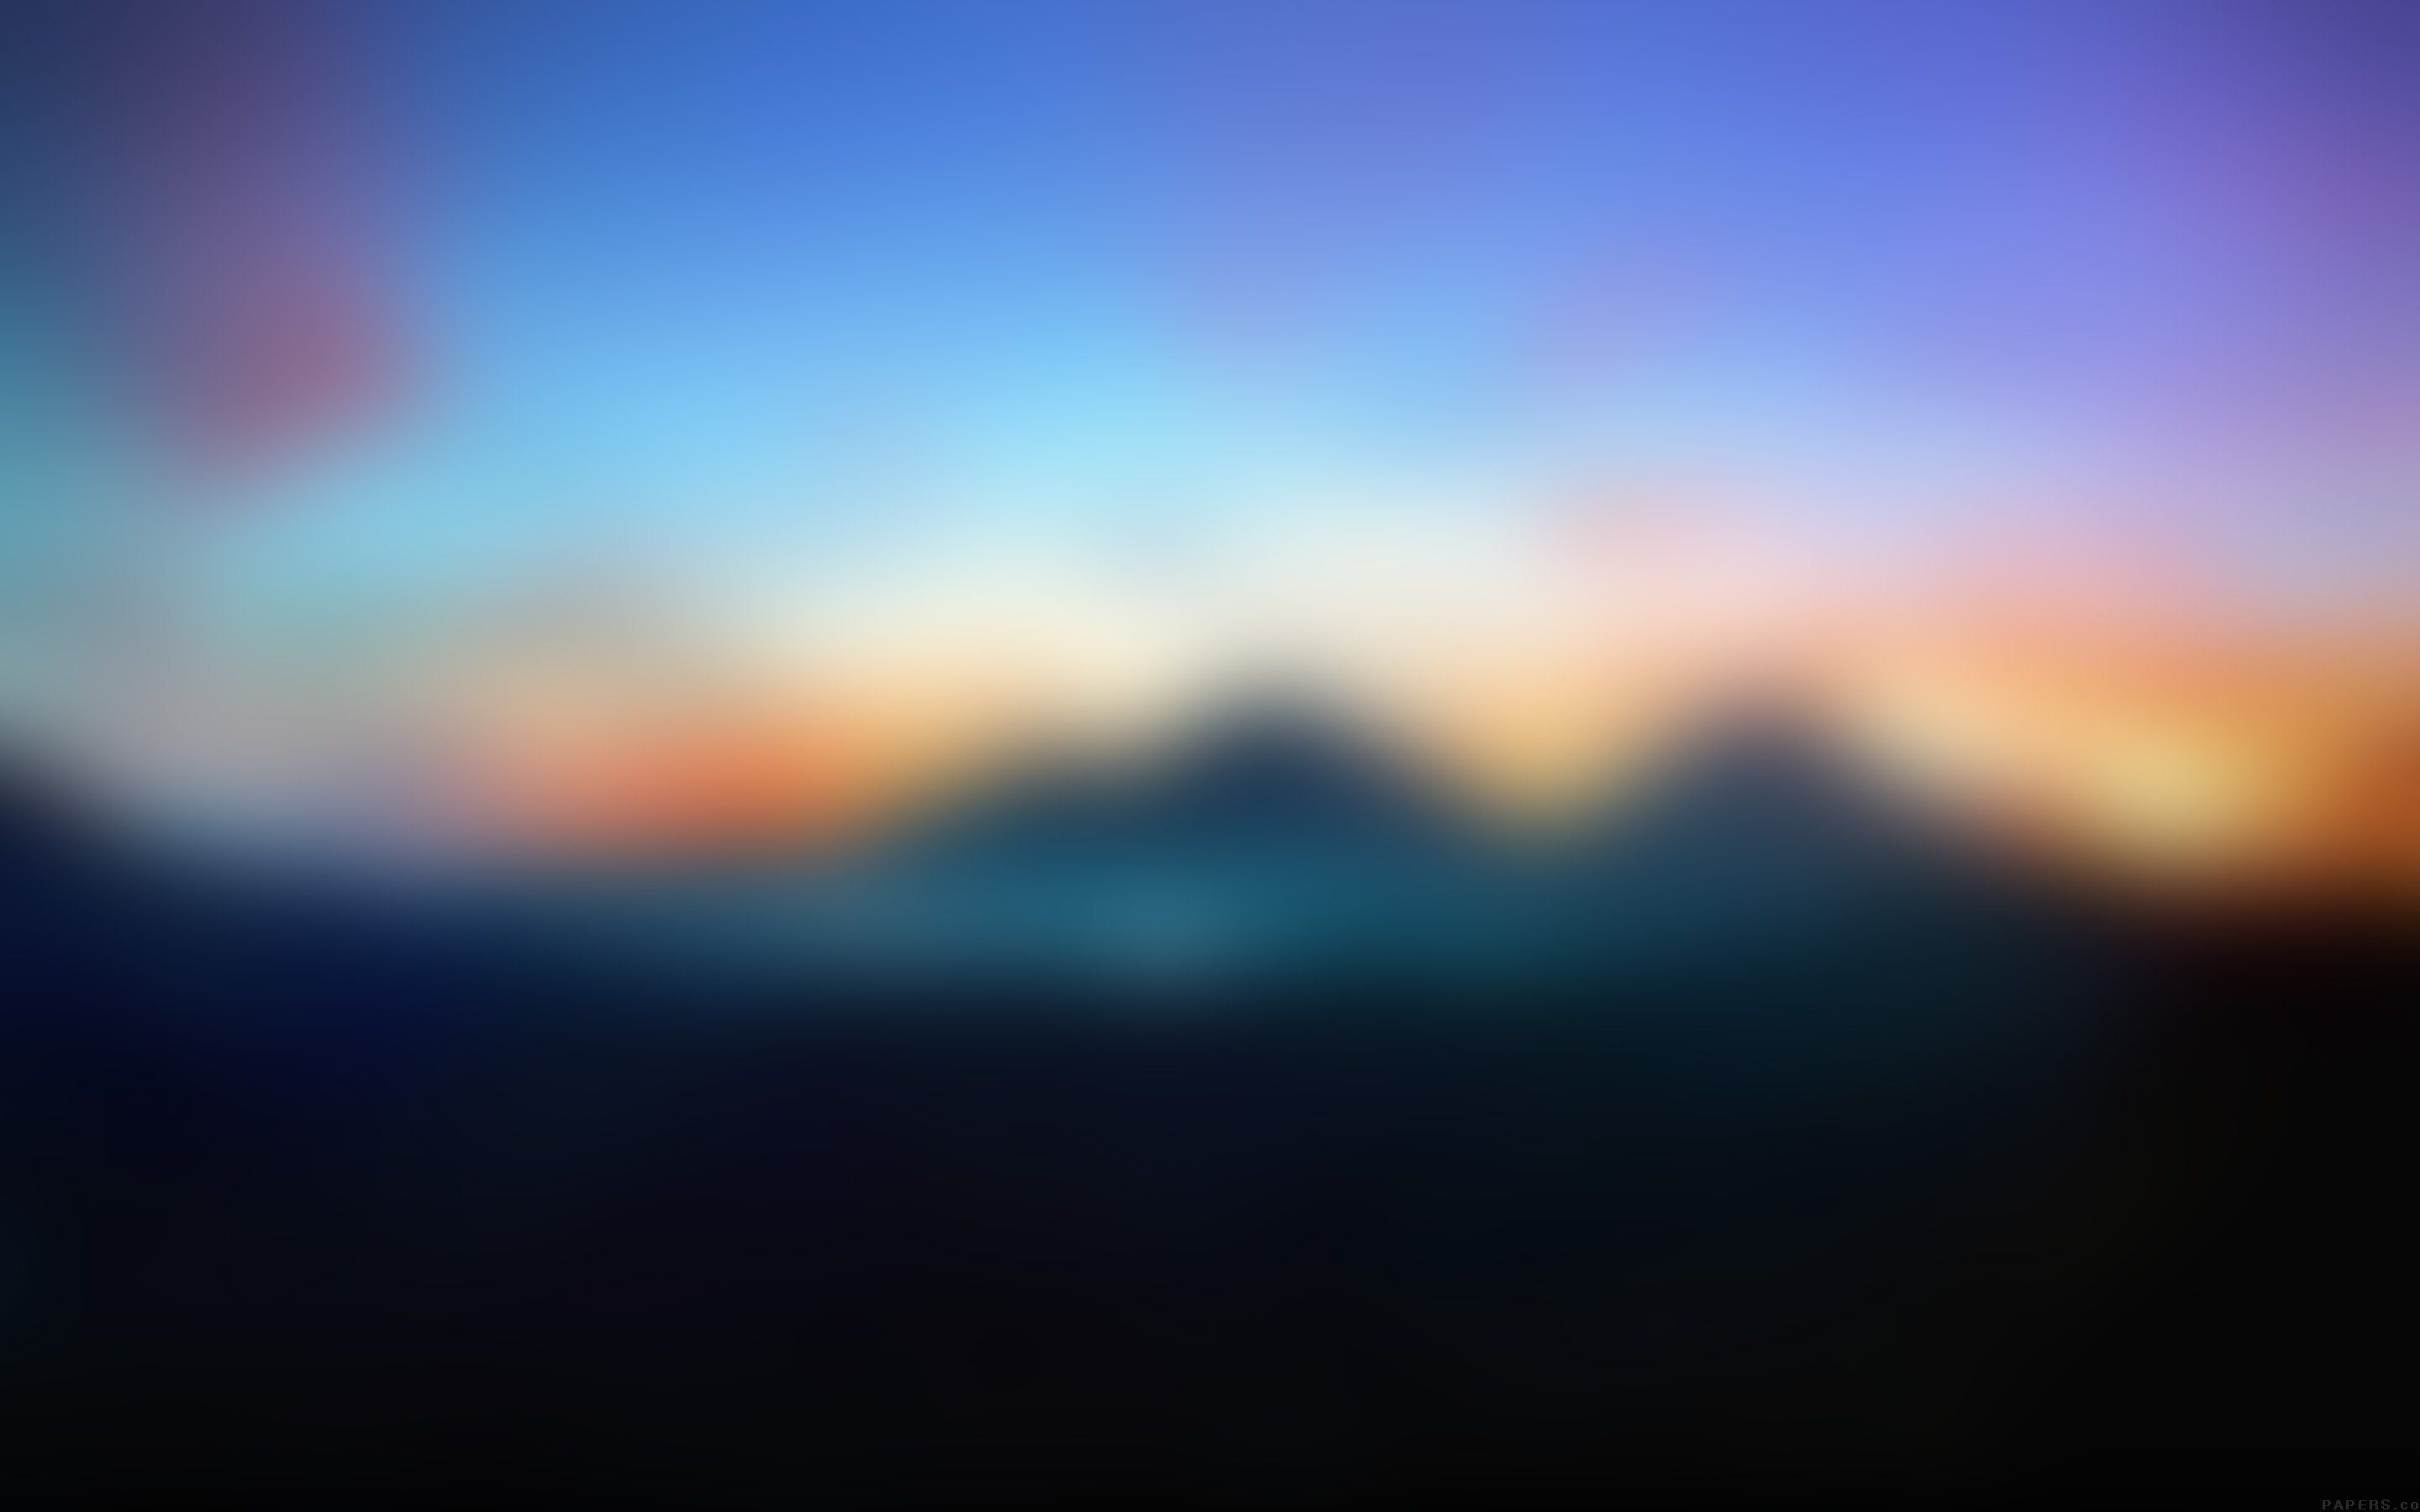 Blur wallpaper HD desktop background download • iPhones Wallpapers